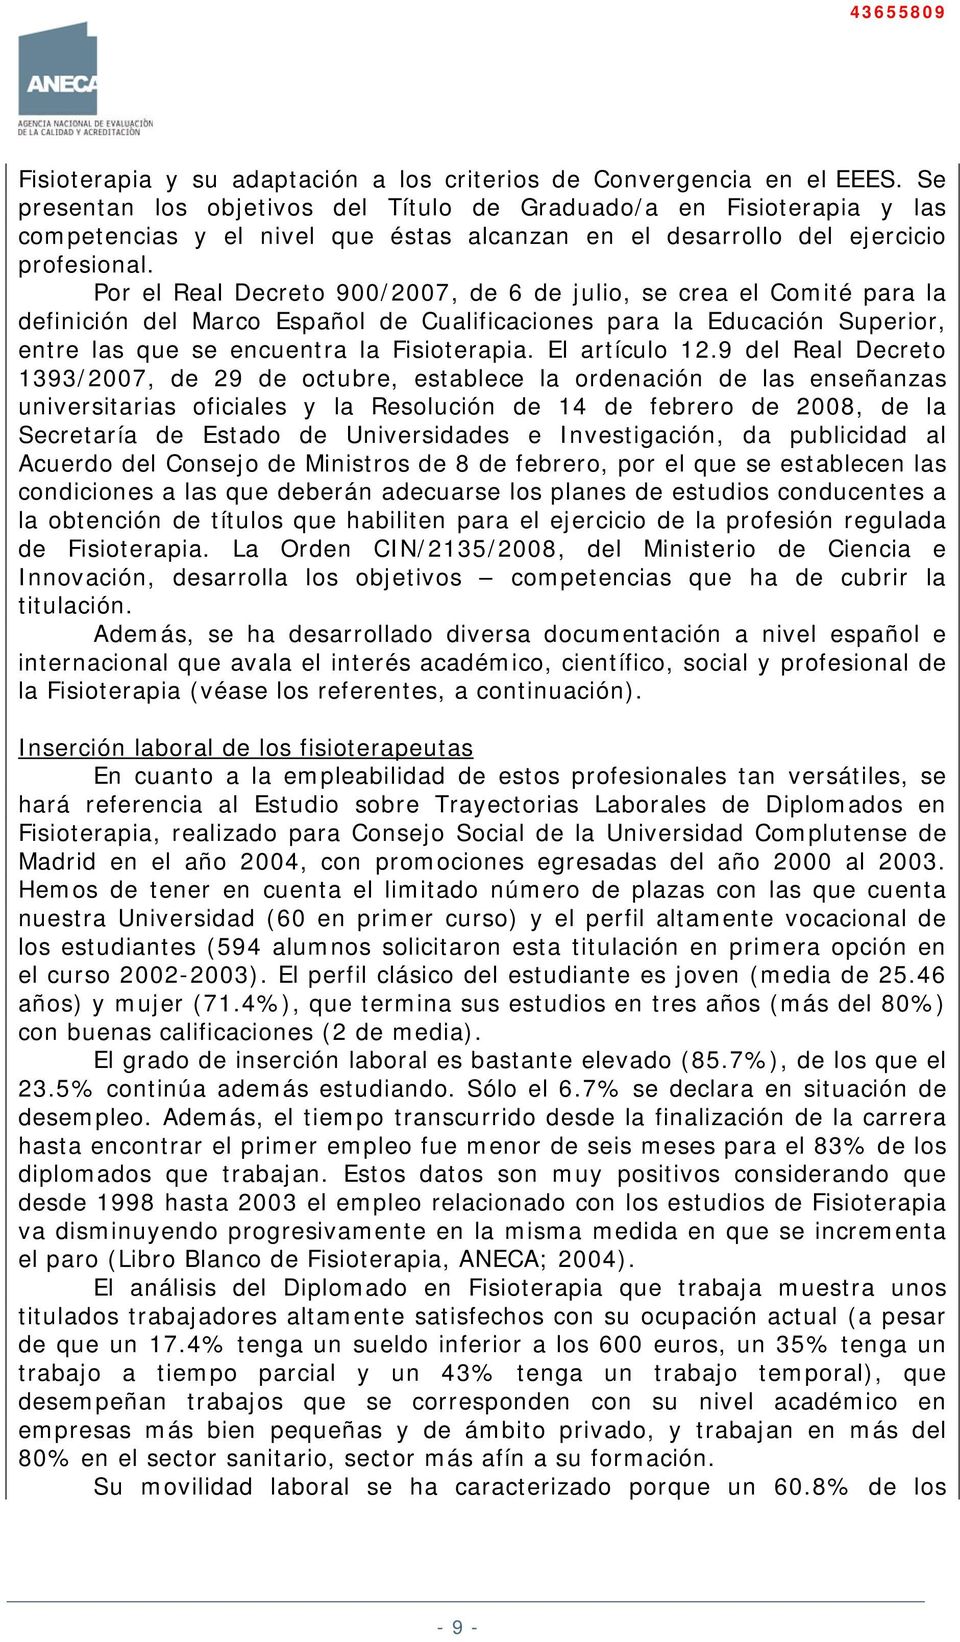 Por el Real Decreto 900/2007, de 6 de julio, se crea el Comité para la definición del Marco Español de Cualificaciones para la Educación Superior, entre las que se encuentra la Fisioterapia.